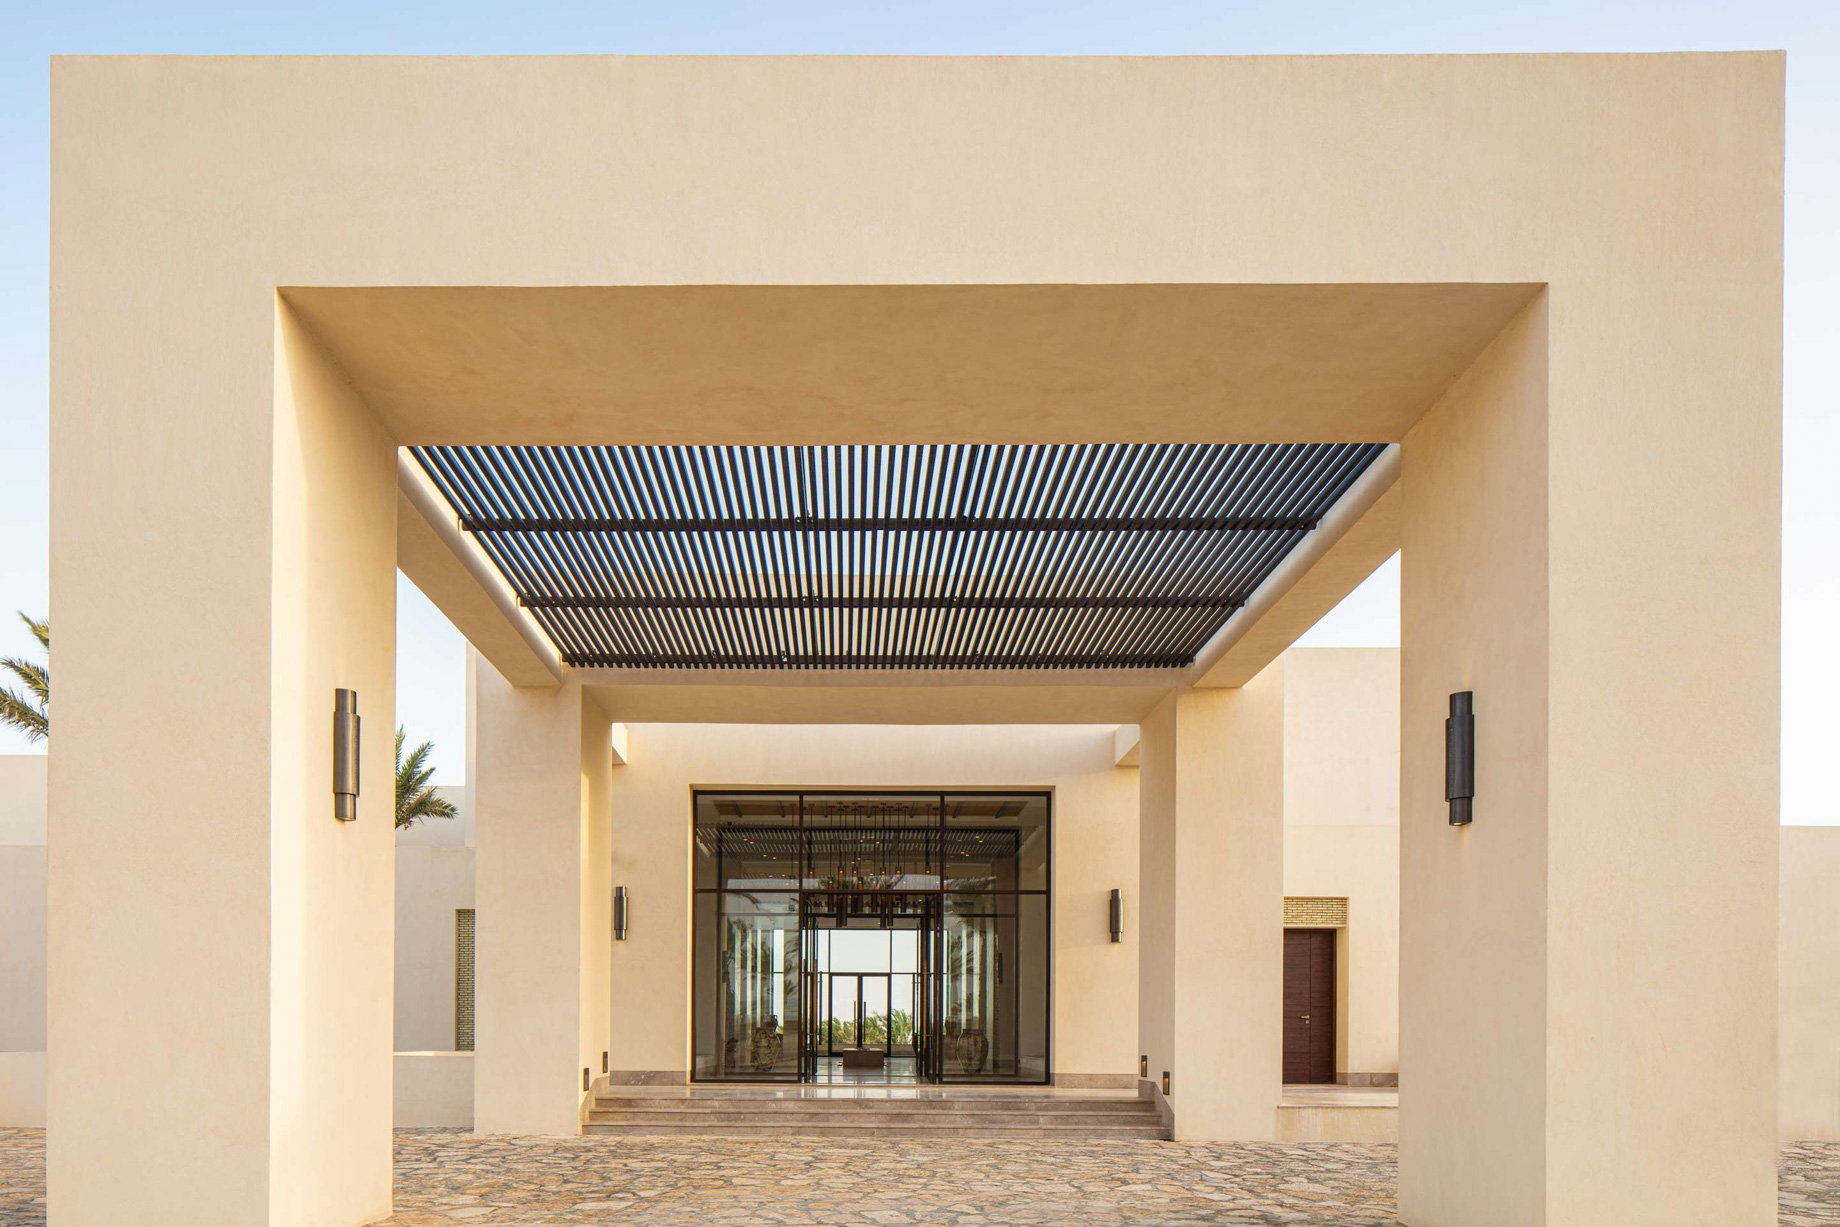 Anantara Sahara Tozeur Resort & Villas – Tozeur, Tunisia – Arrival Entrance